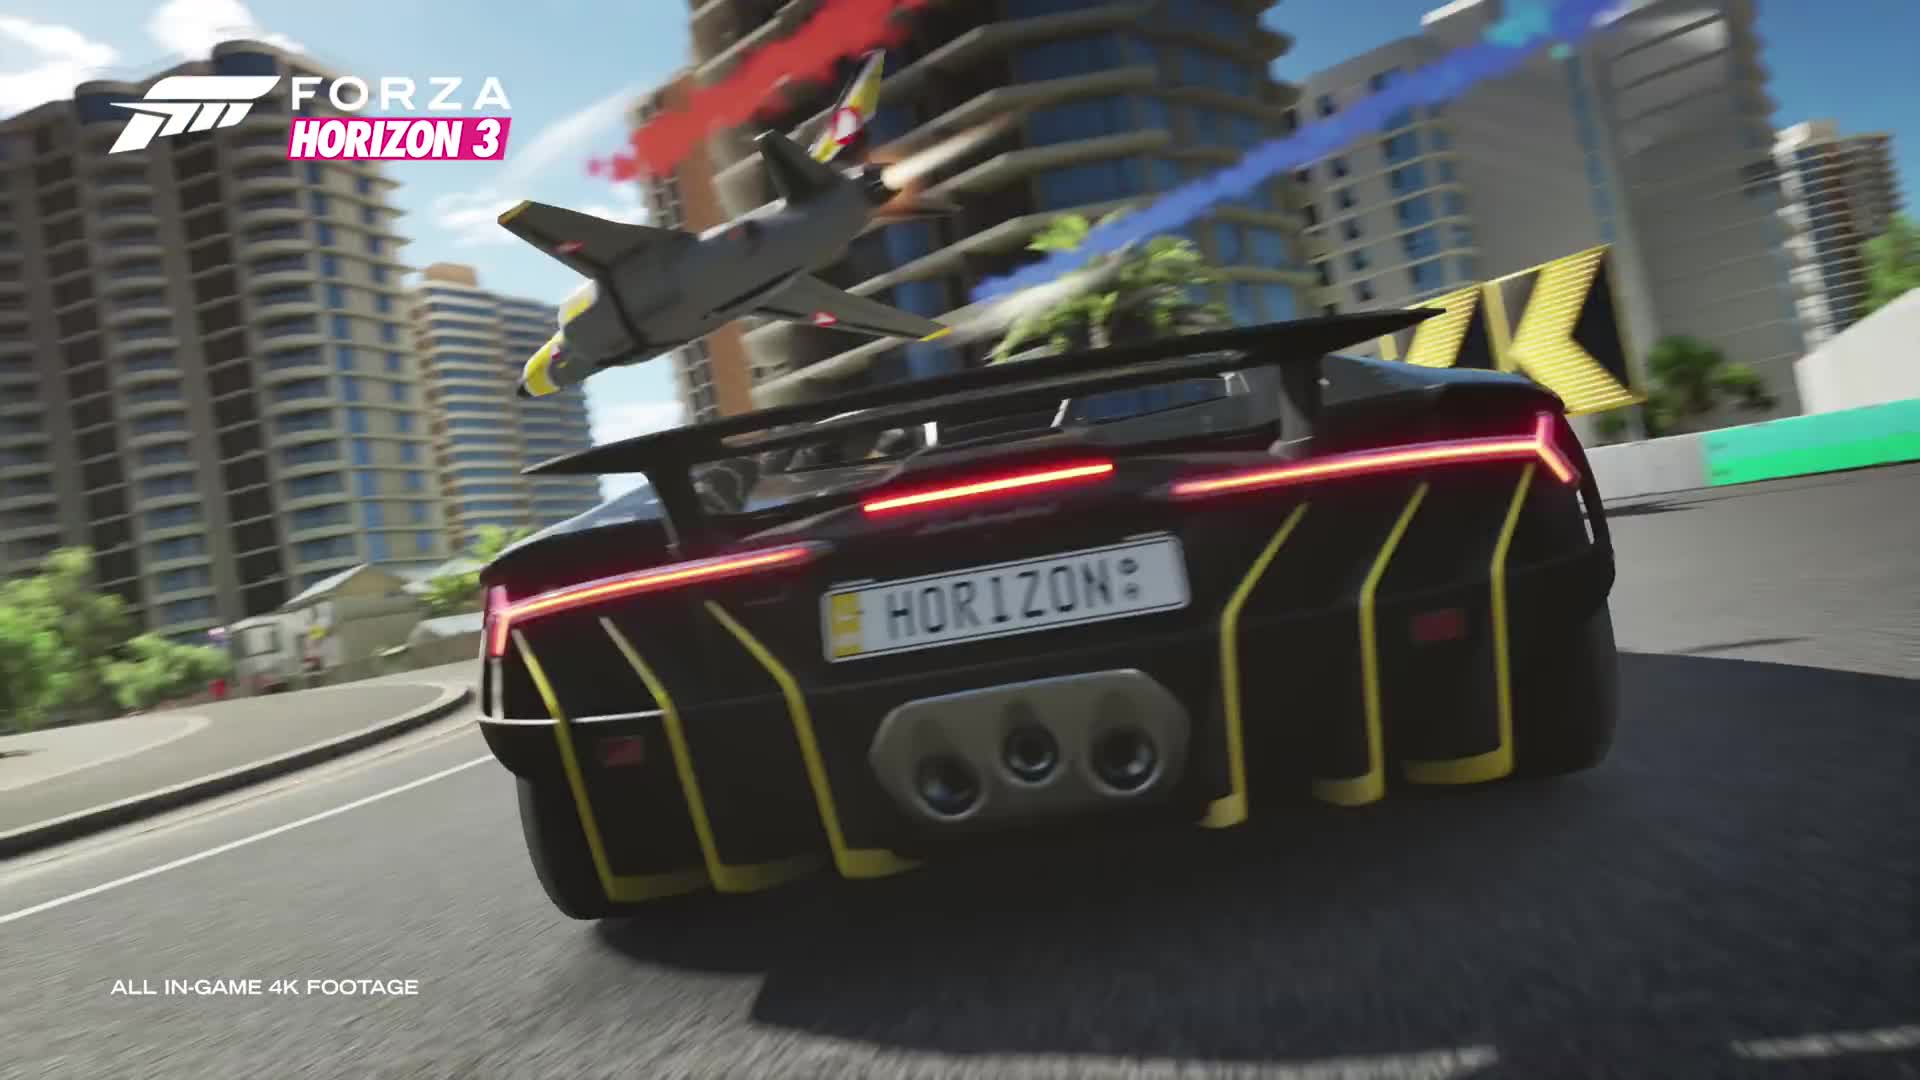 Forza Horizon 3 - Xbox One X enhanced trailer